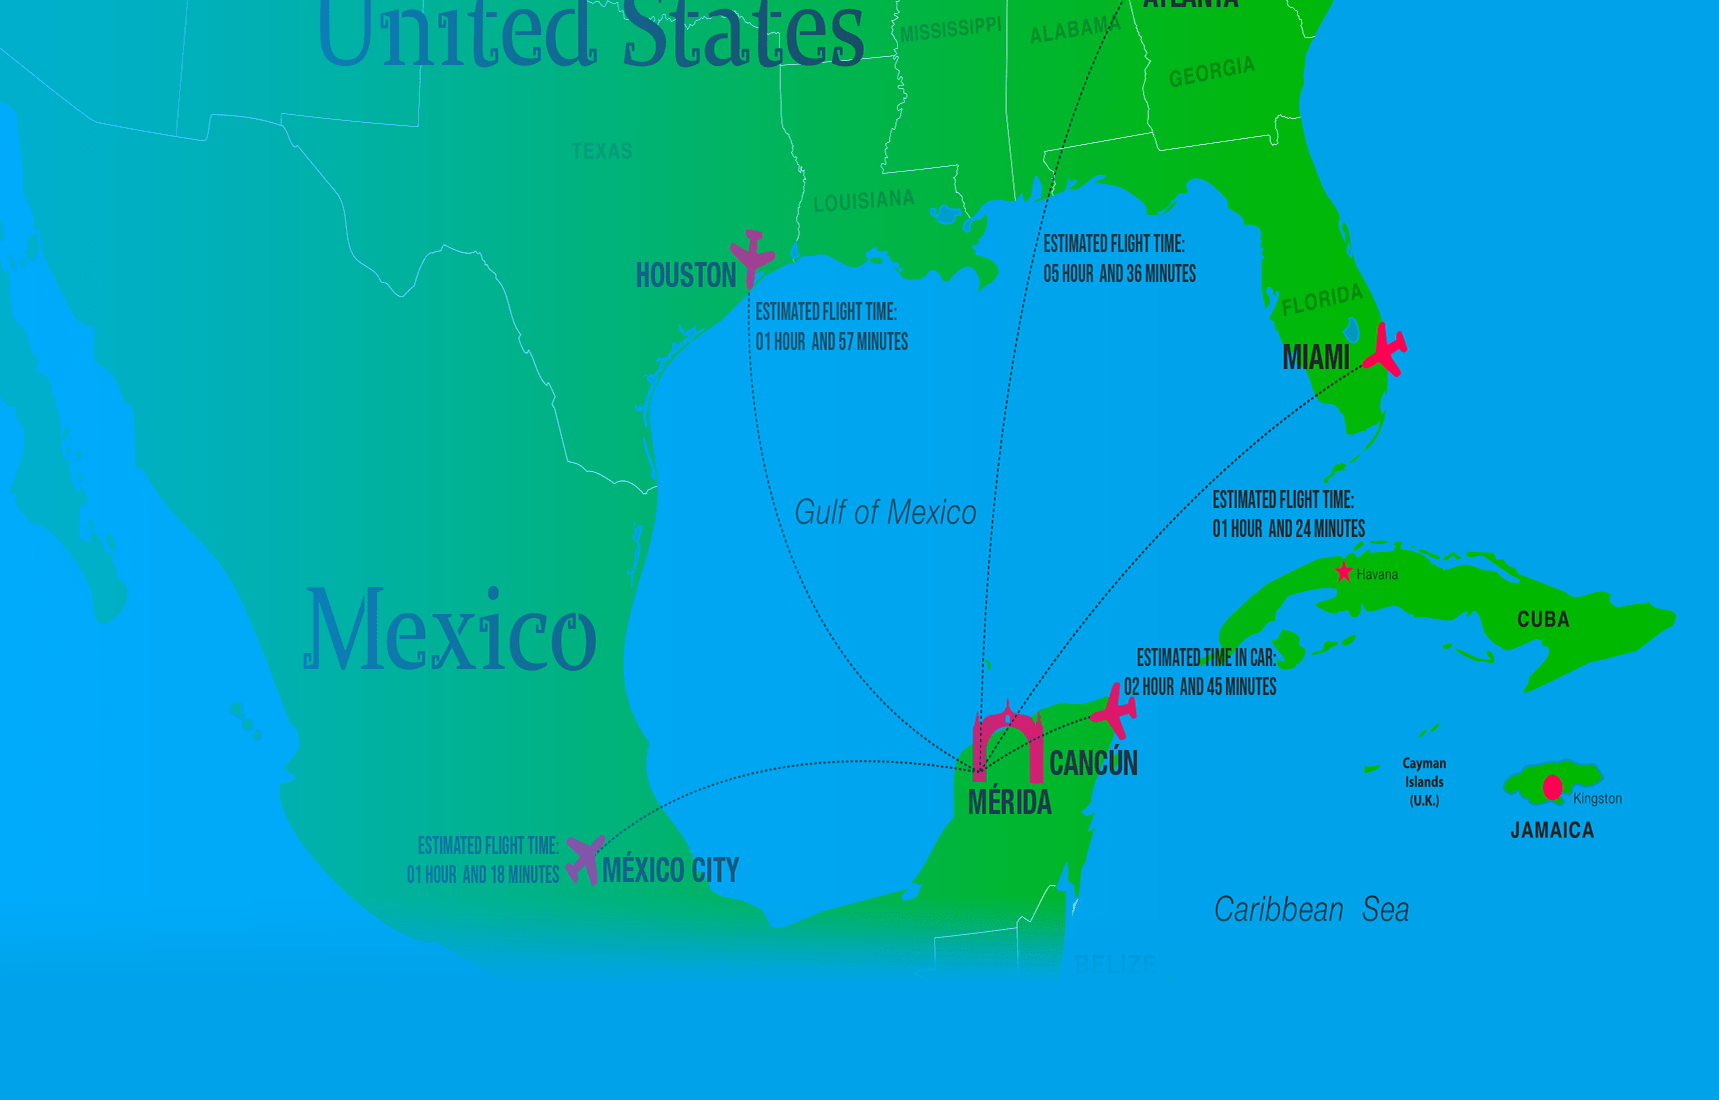 Mérida to US cities